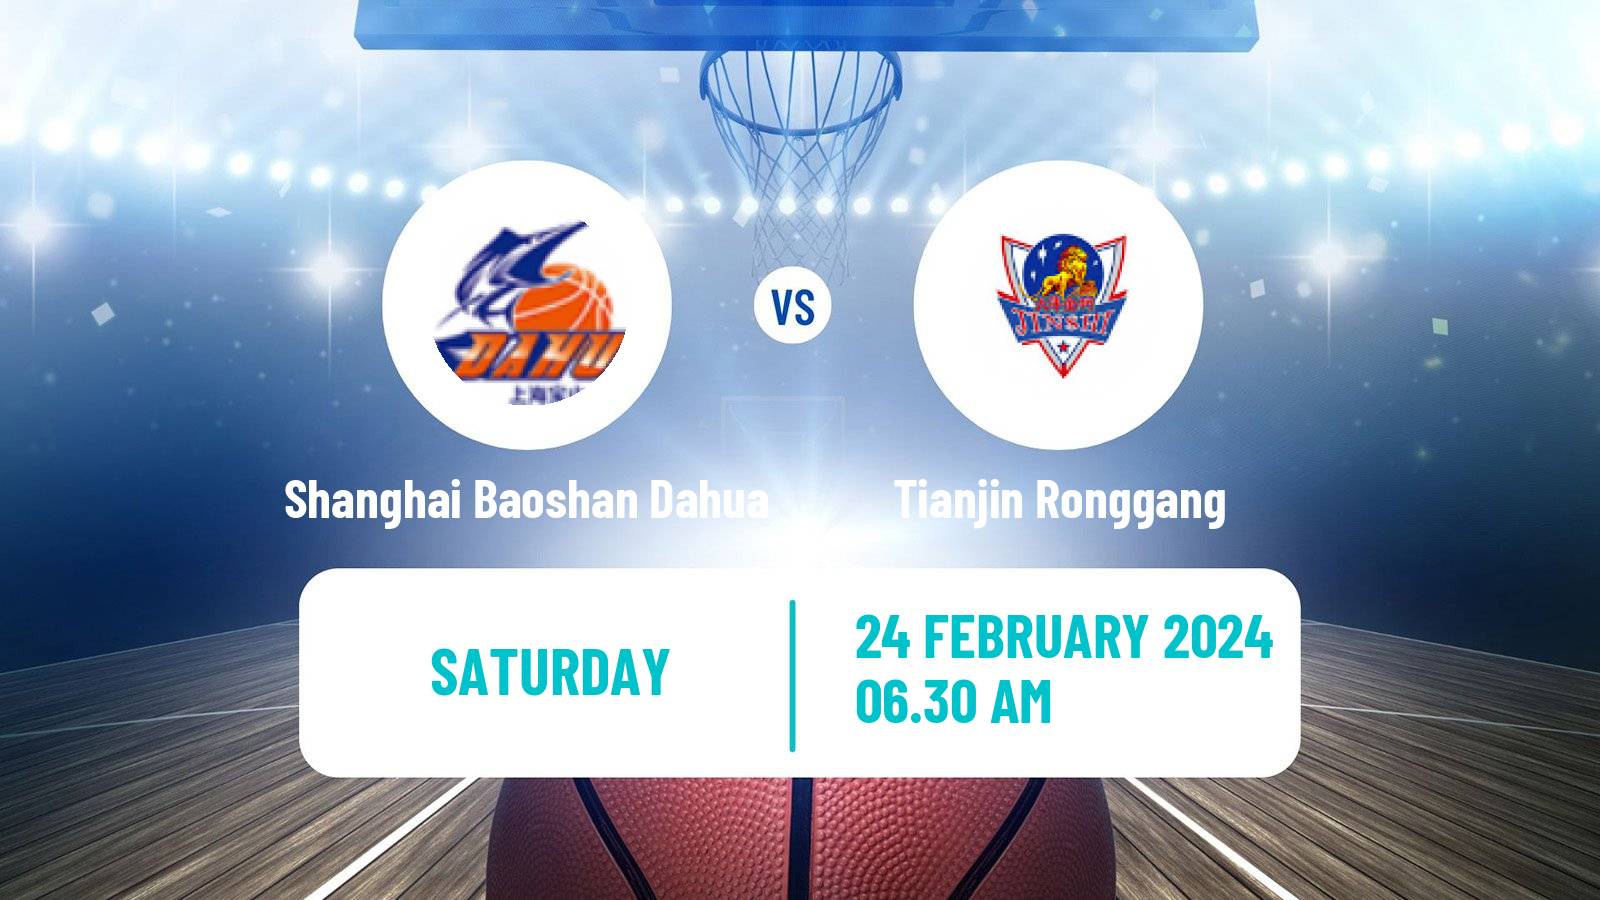 Basketball WCBA Shanghai Baoshan Dahua - Tianjin Ronggang